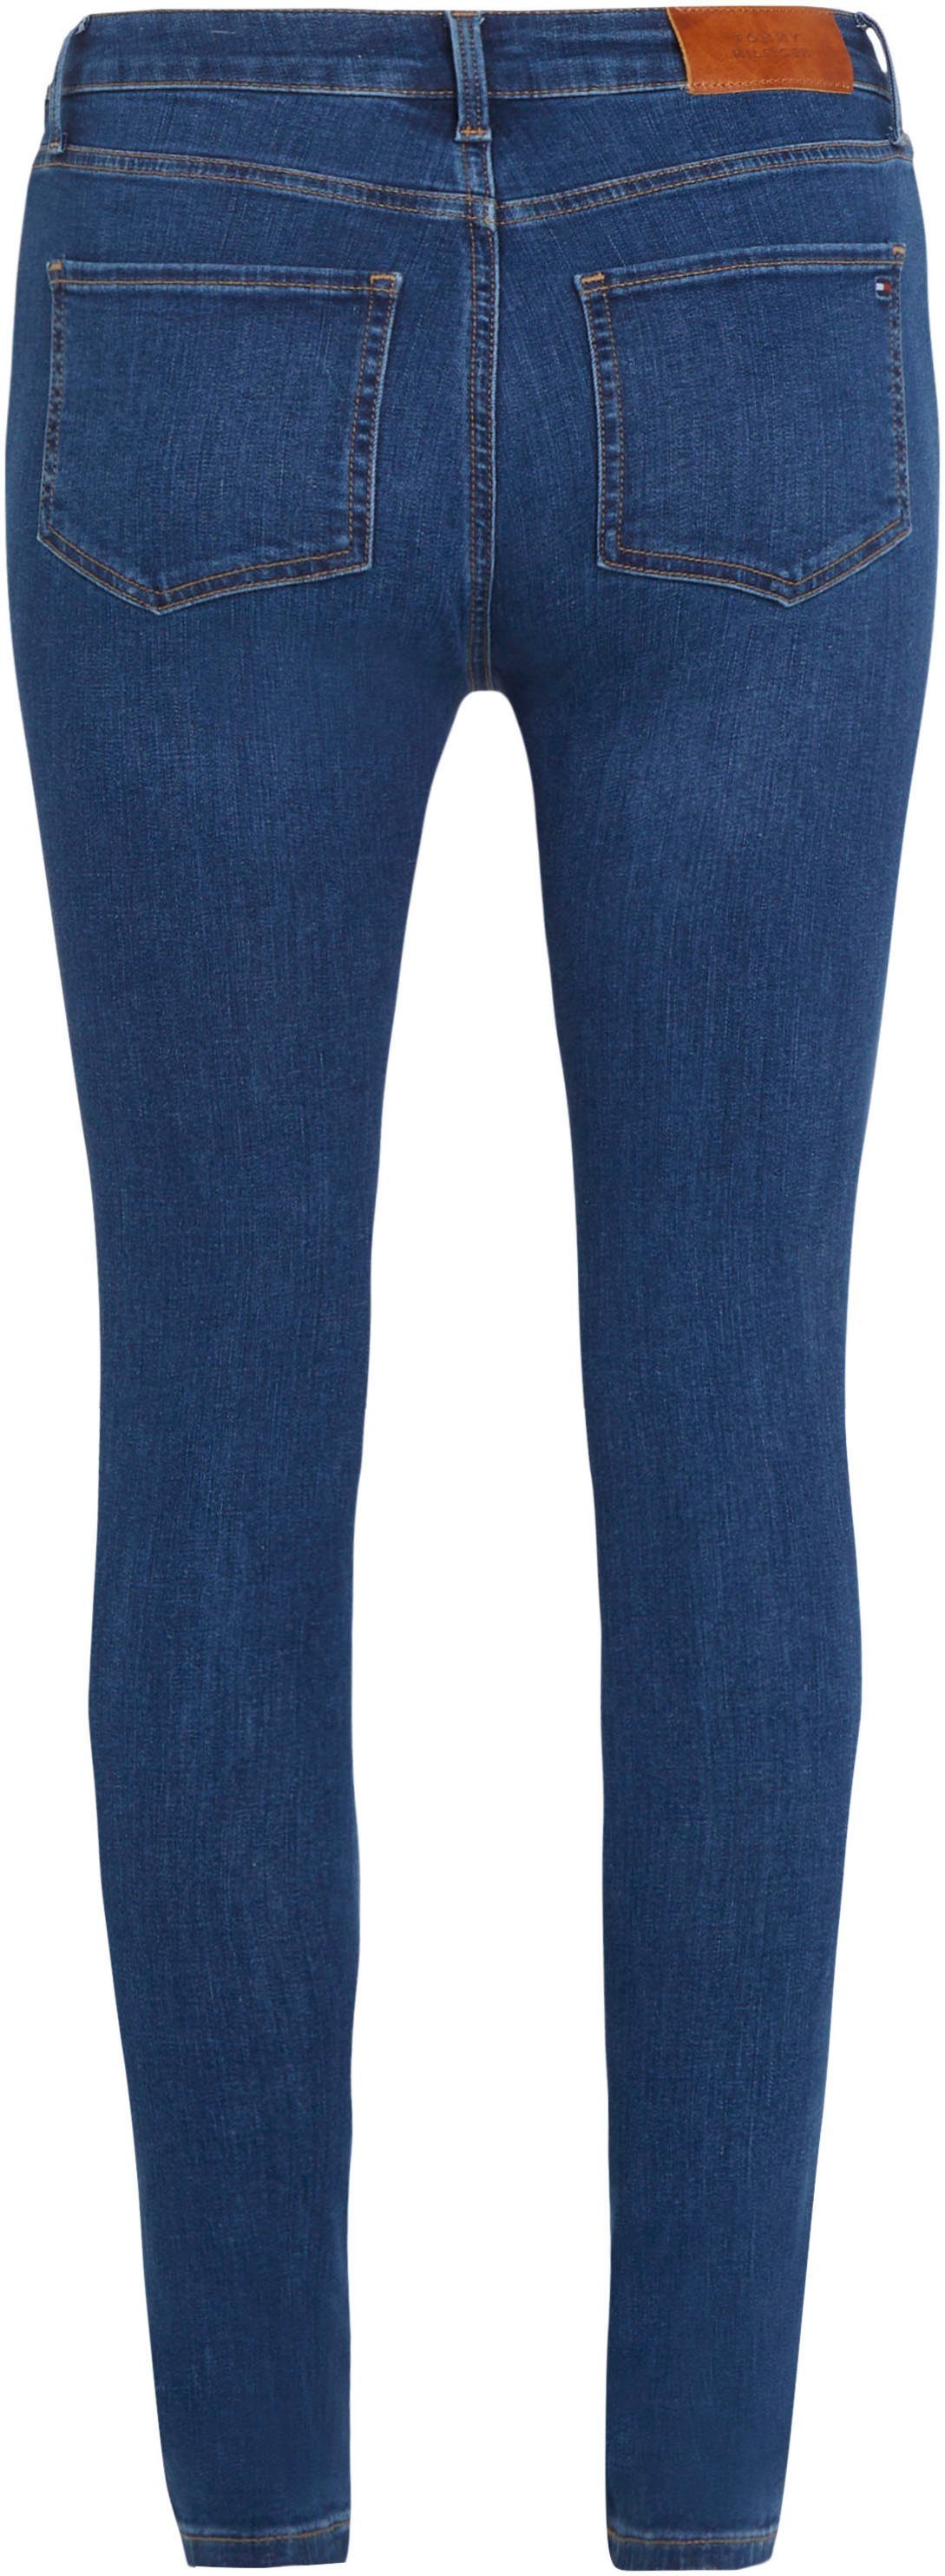 HW blauer Tommy FLEX Waschung in SKINNY HARLEM U Hilfiger KAI TH Skinny-fit-Jeans